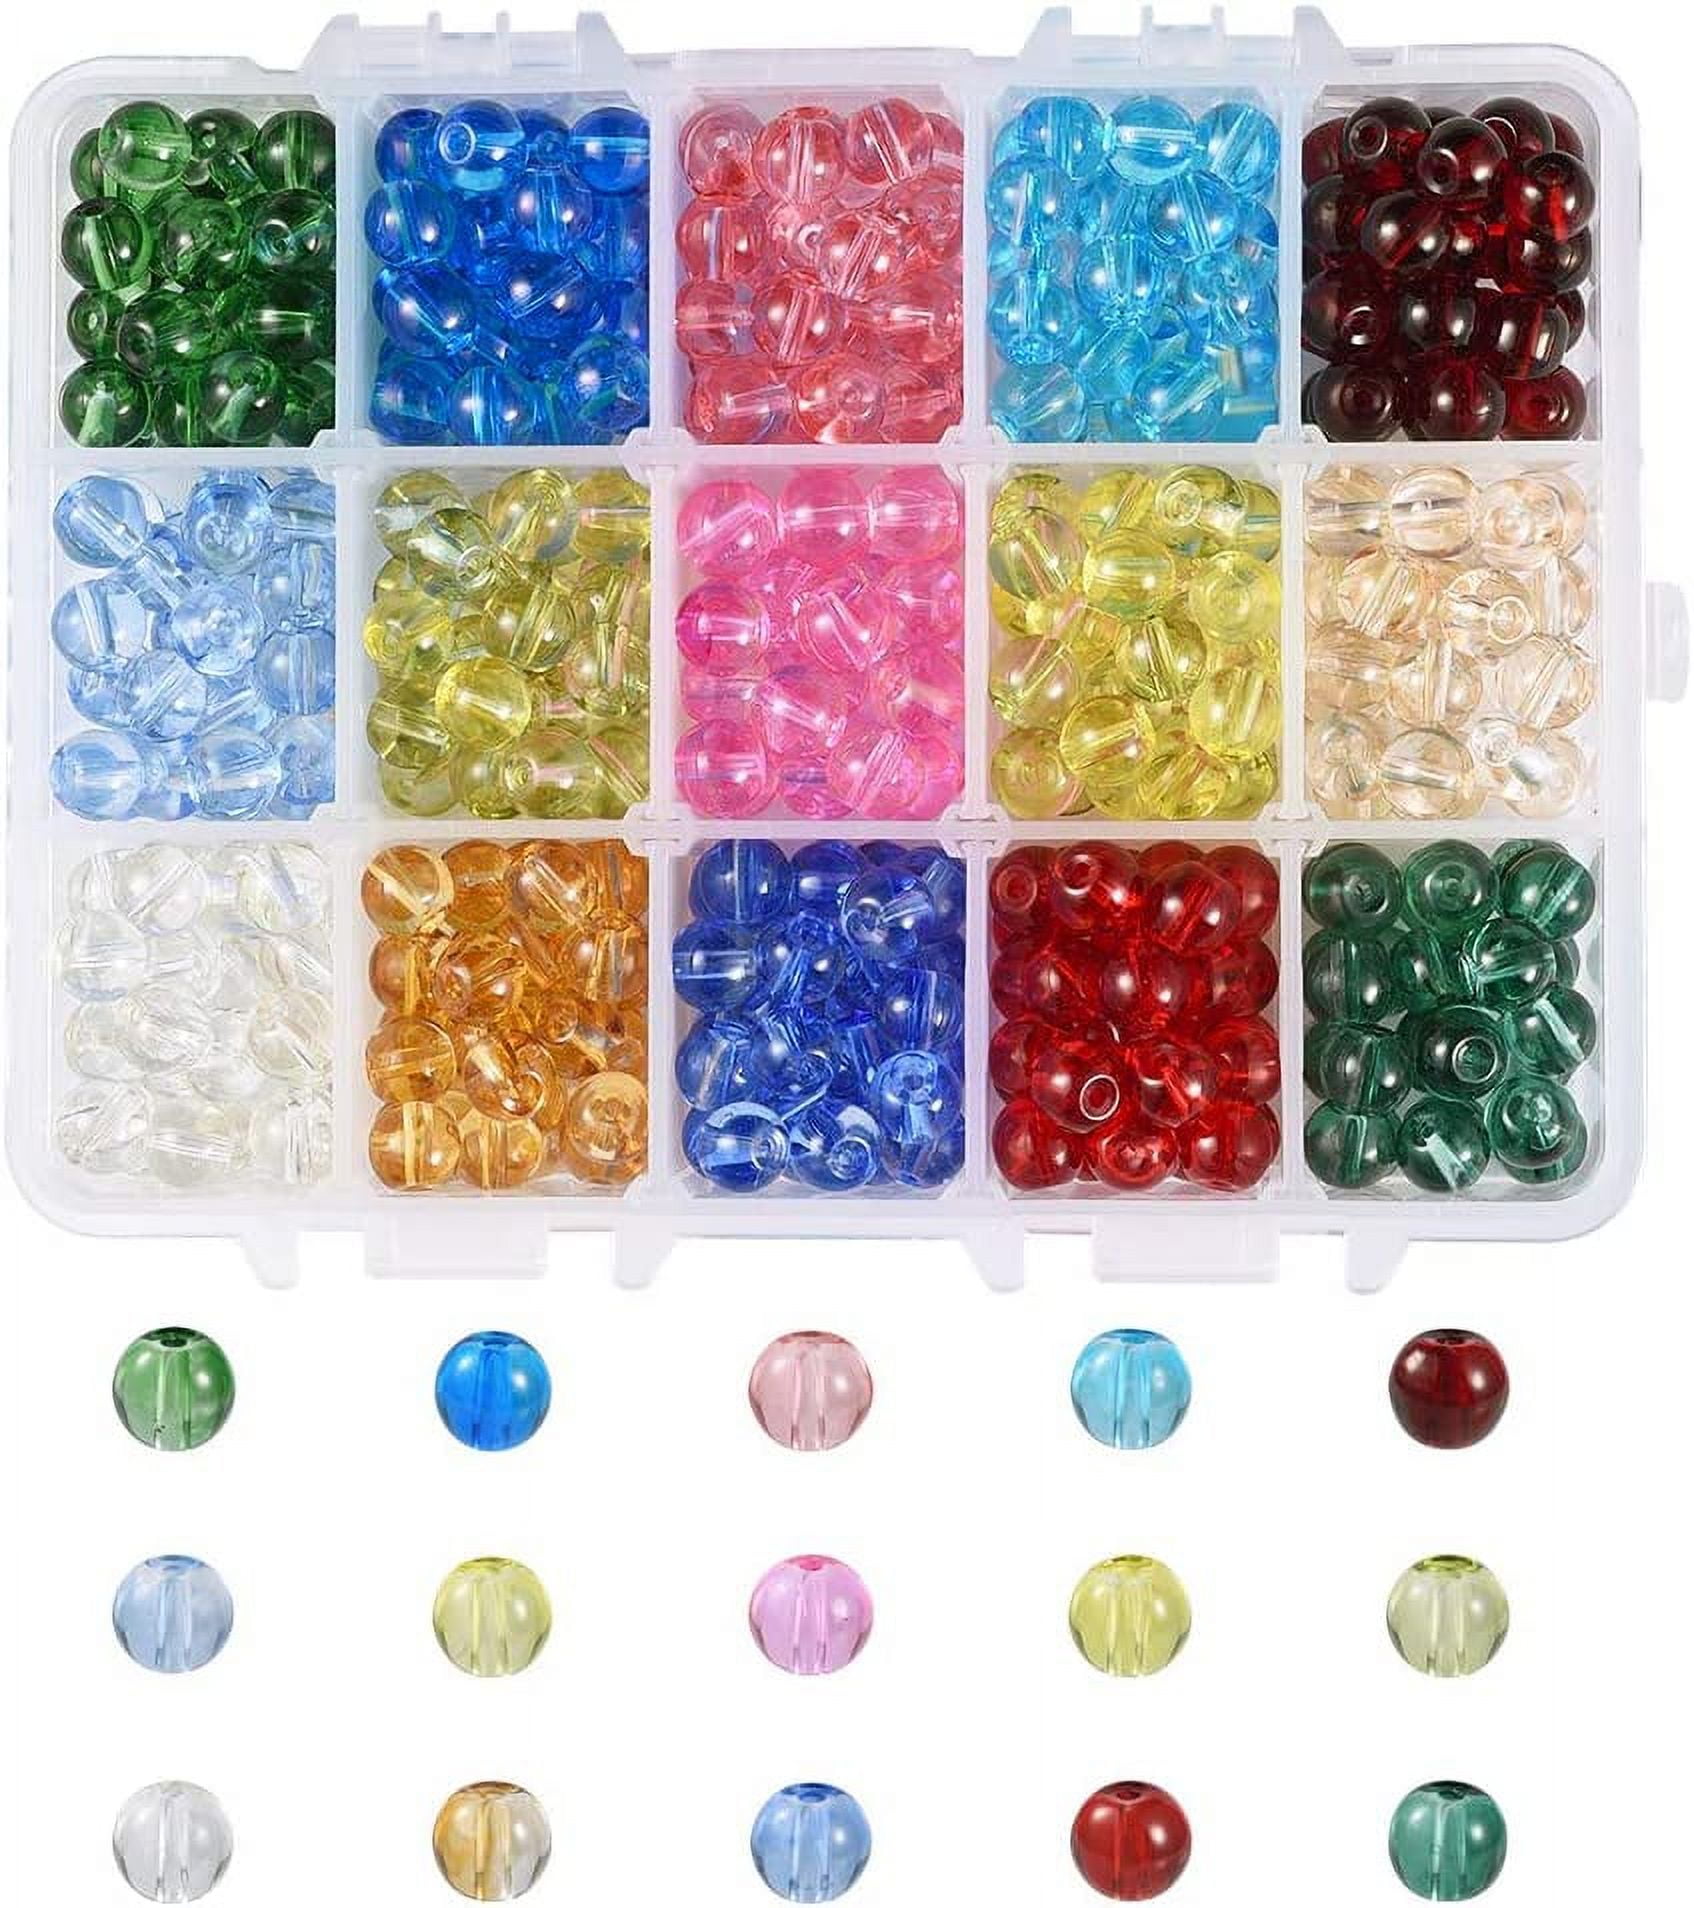 Bulk Lot Glass Beads for Bracelet Making RED Round LOVE 1 lb 1000+ pcs